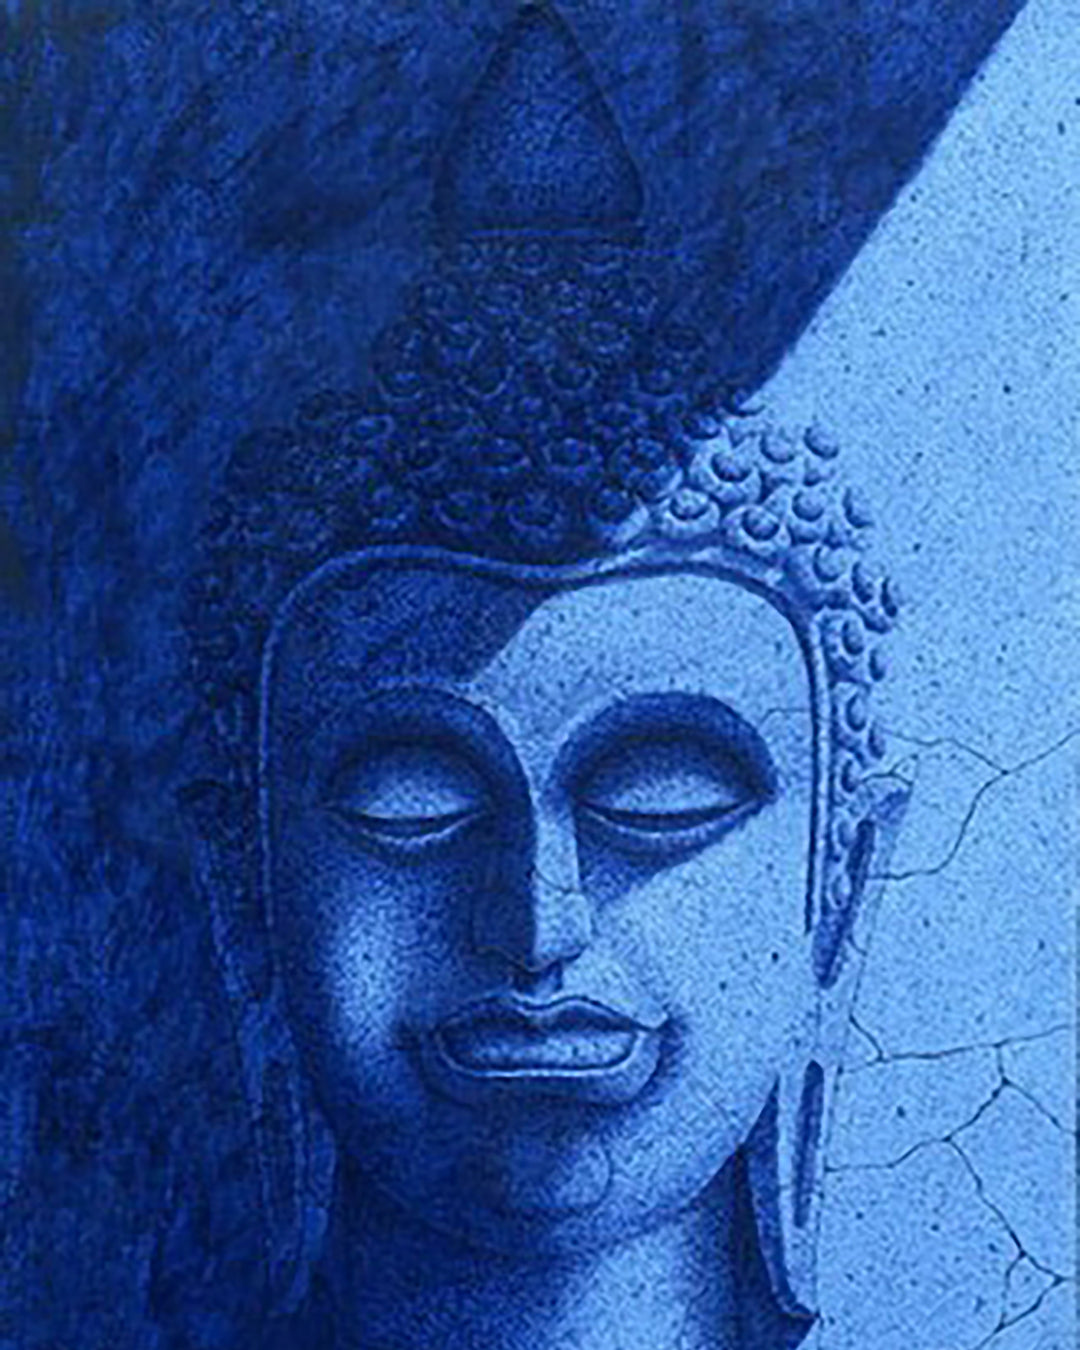 Dvaravati Buddha Painting